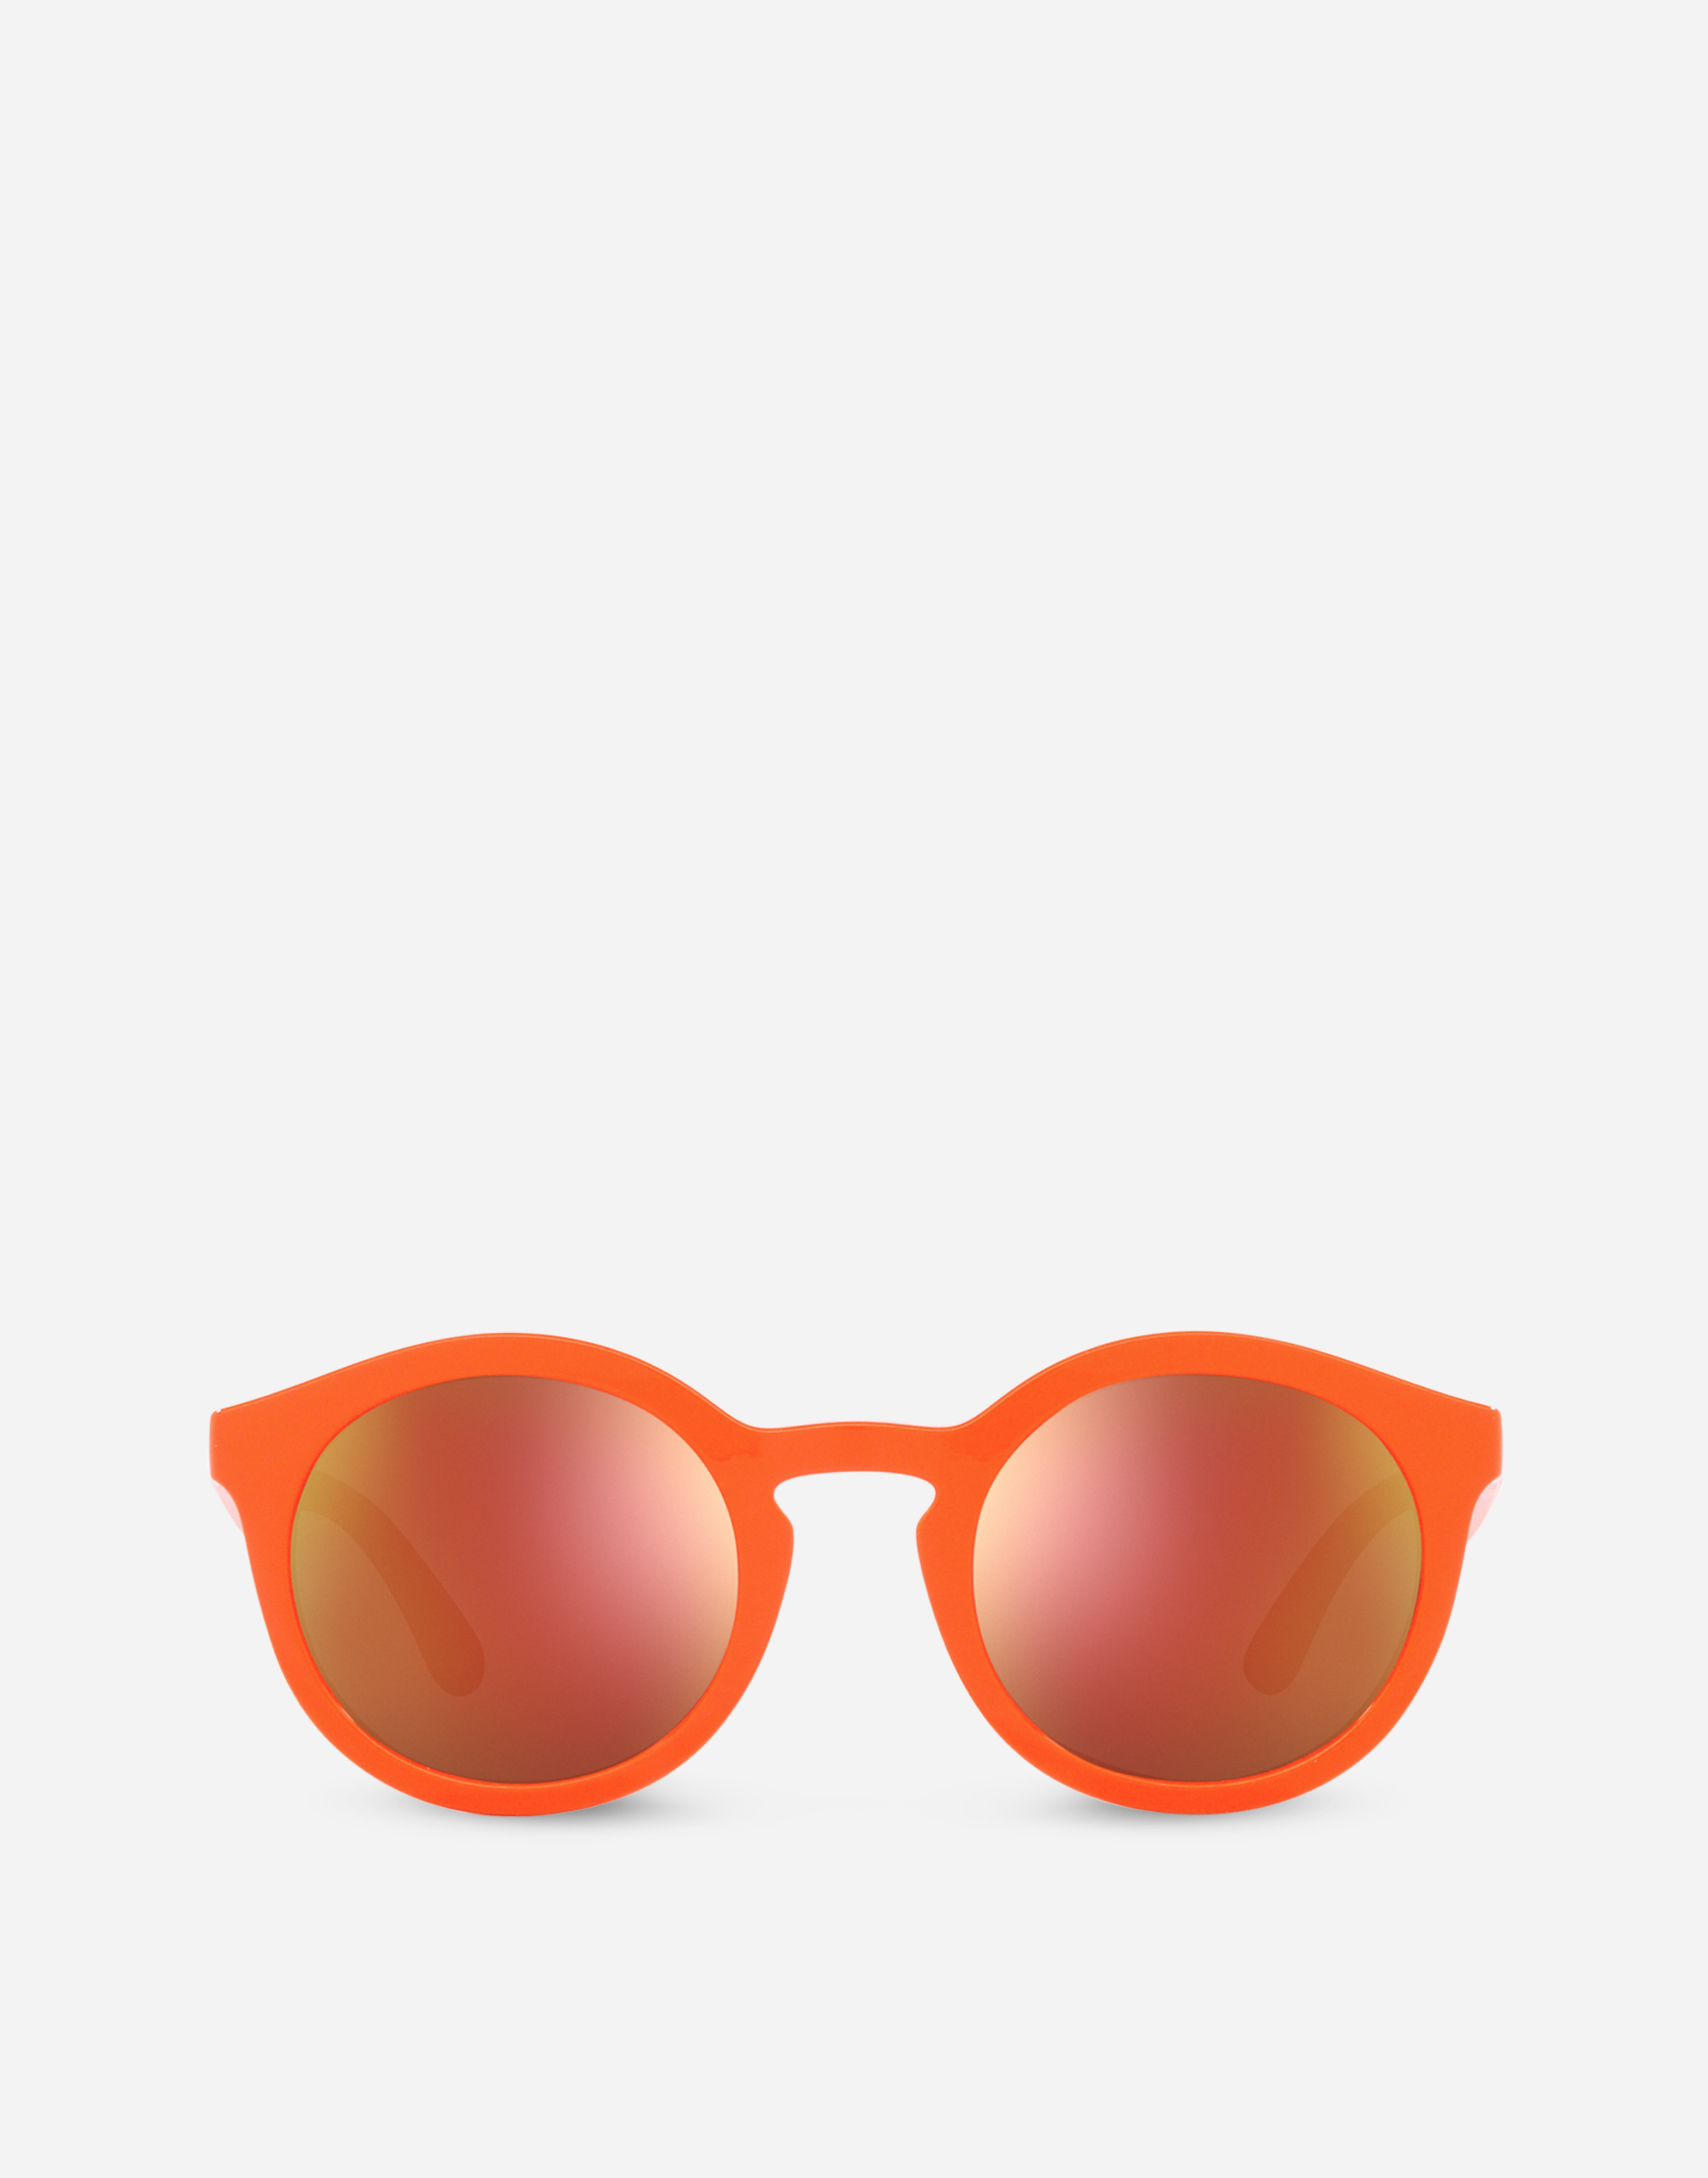 Gamers Sunglasses in Orange